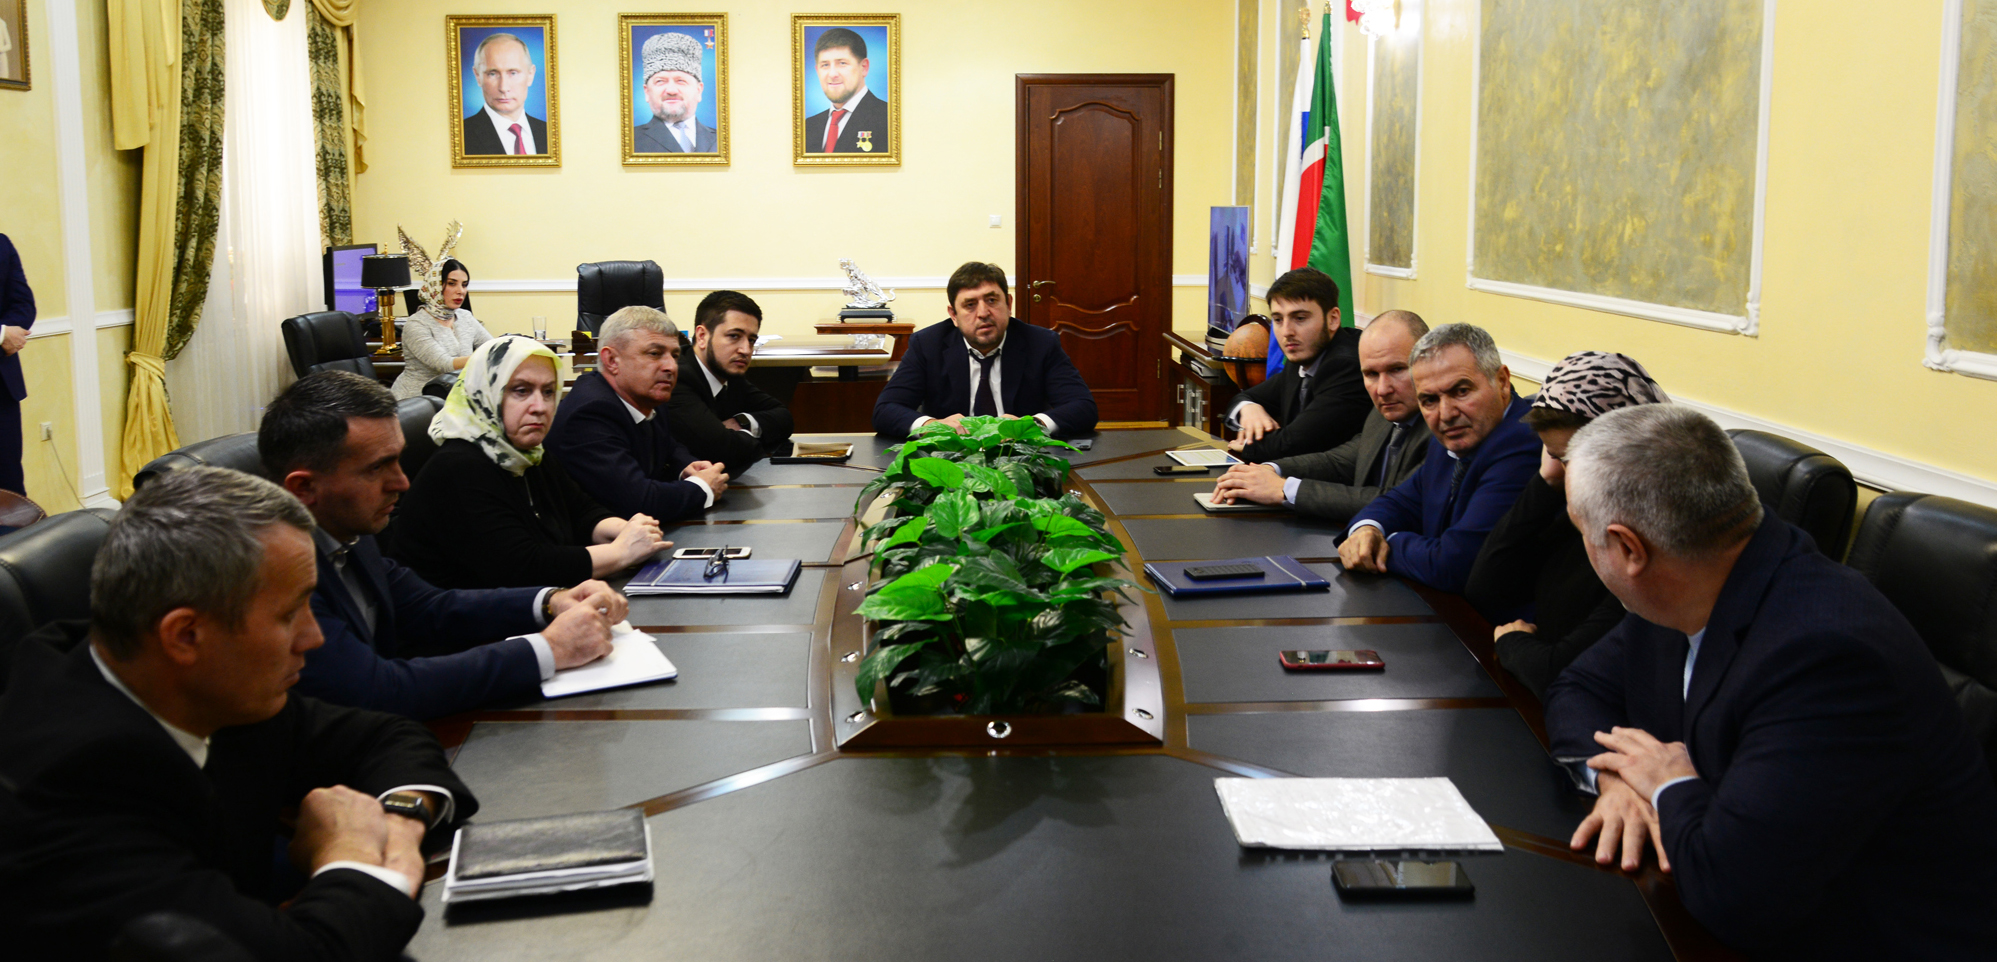 В ТФОМС Чеченской Республики обсудили подготовку проекта Территориальной программы госгарантий на 2020 год